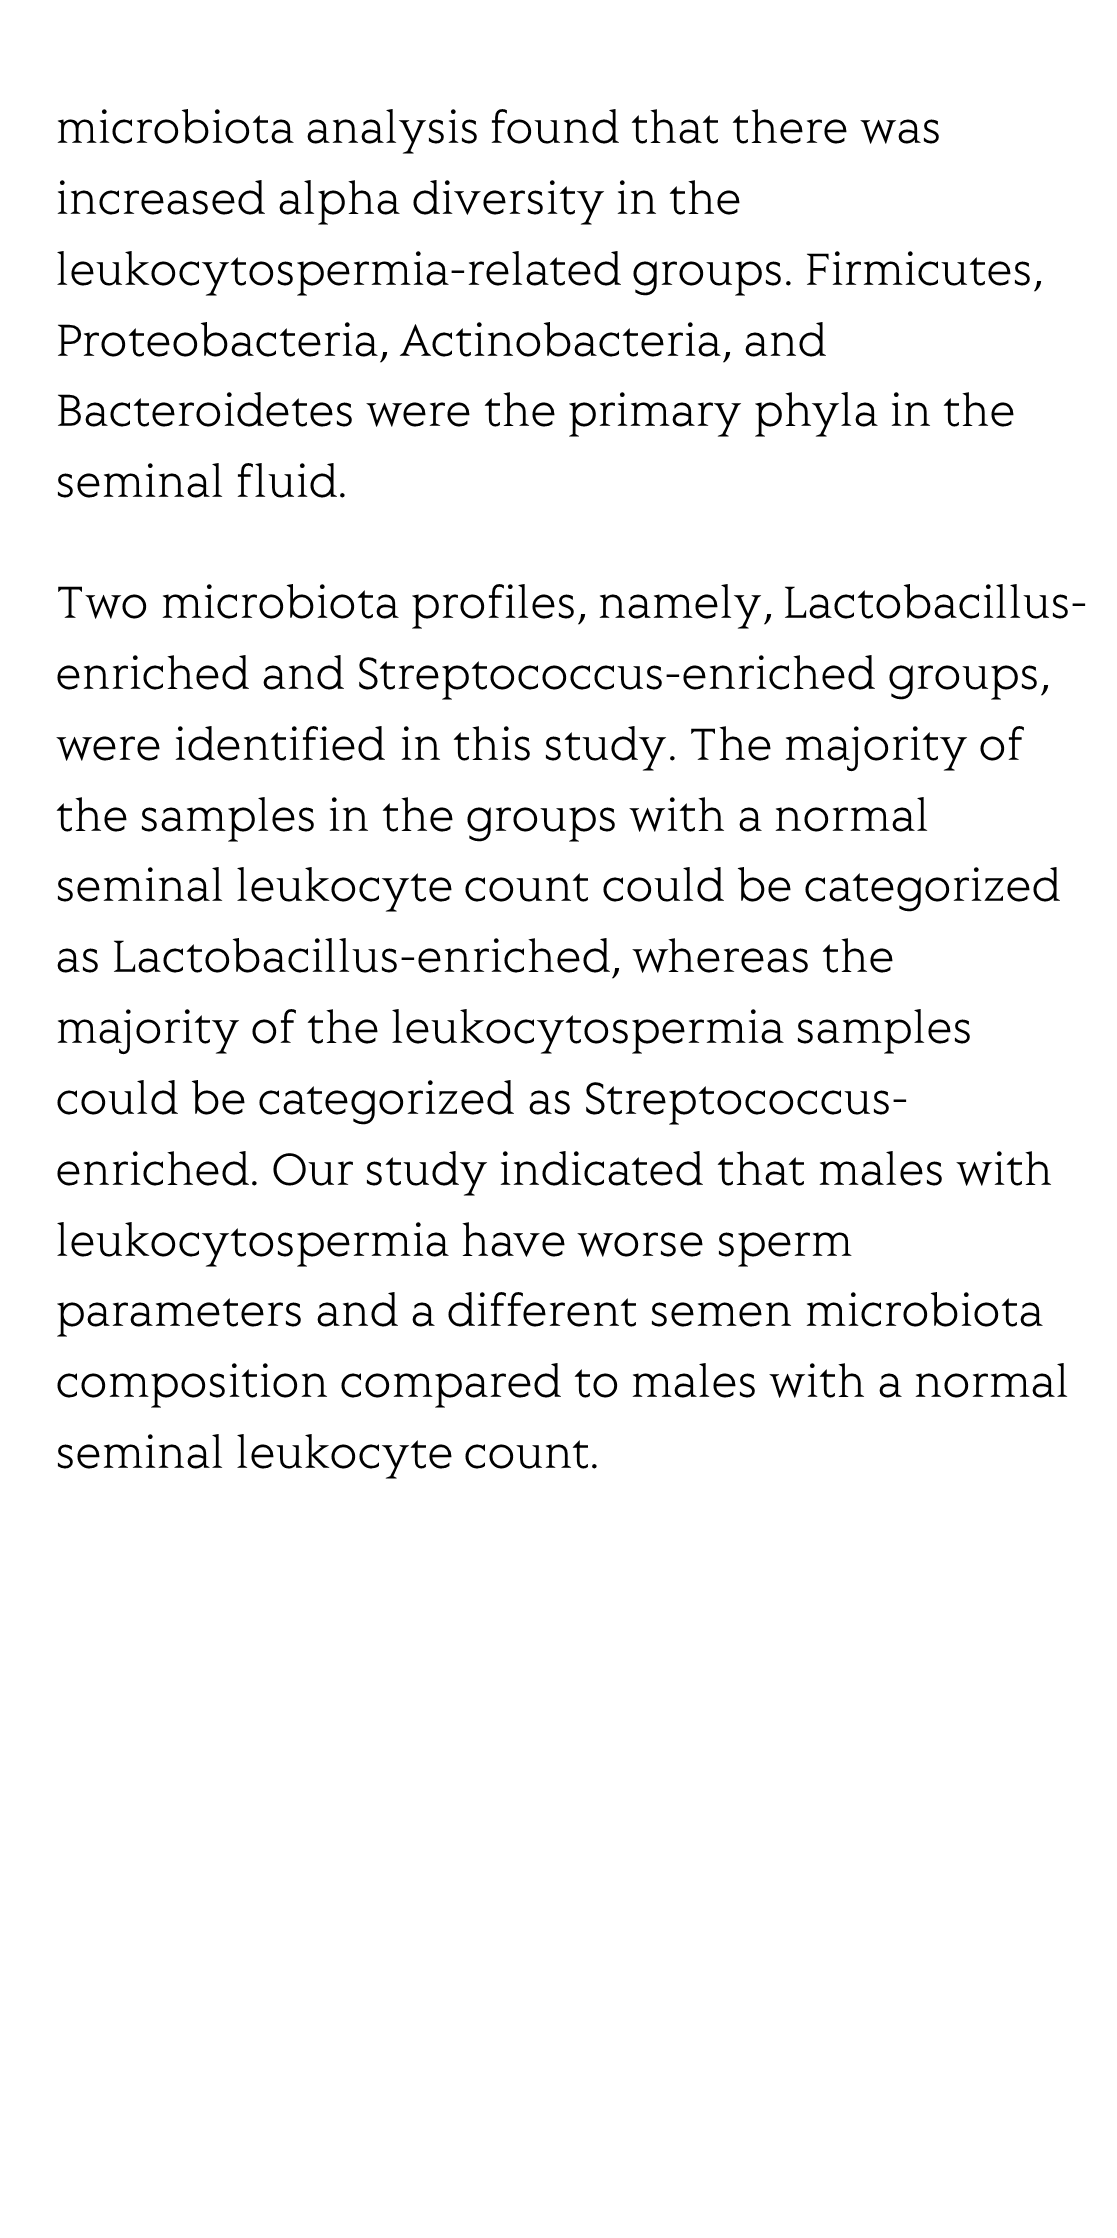 Semen microbiota in normal and leukocytospermic males_3